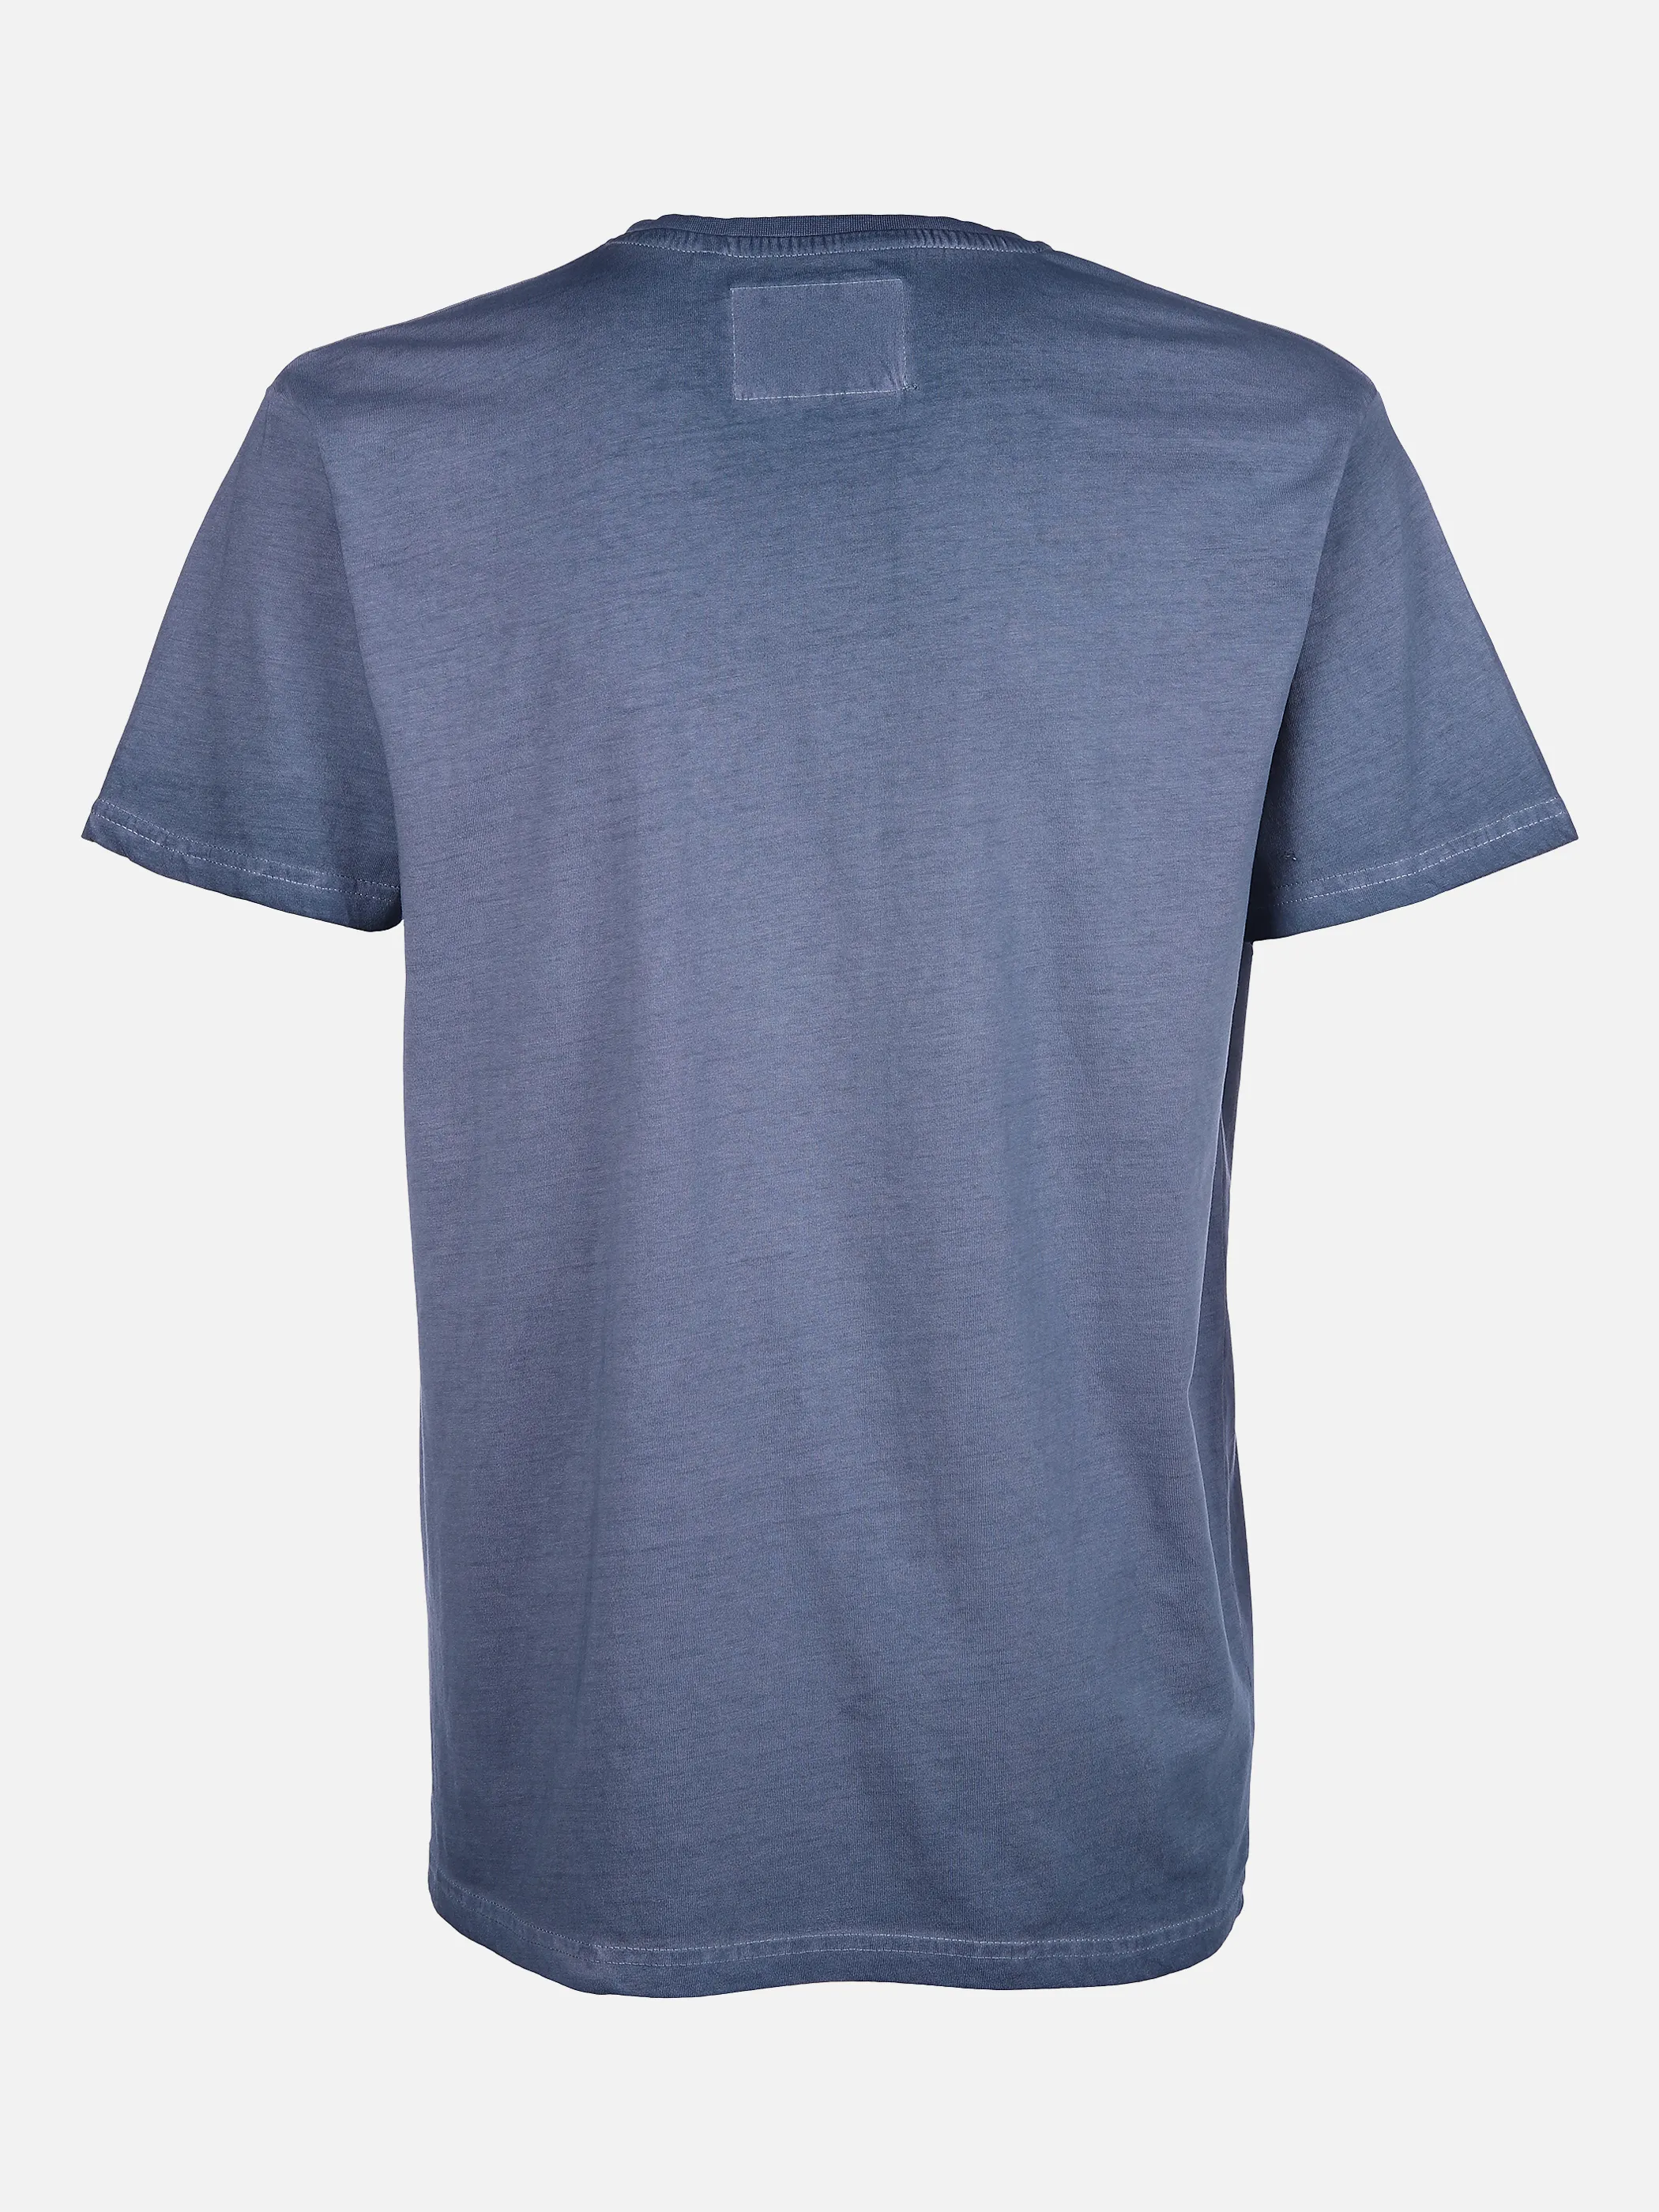 Top Gun He. T-Shirt 1/2 Arm washer Blau 864381 BLUE 2